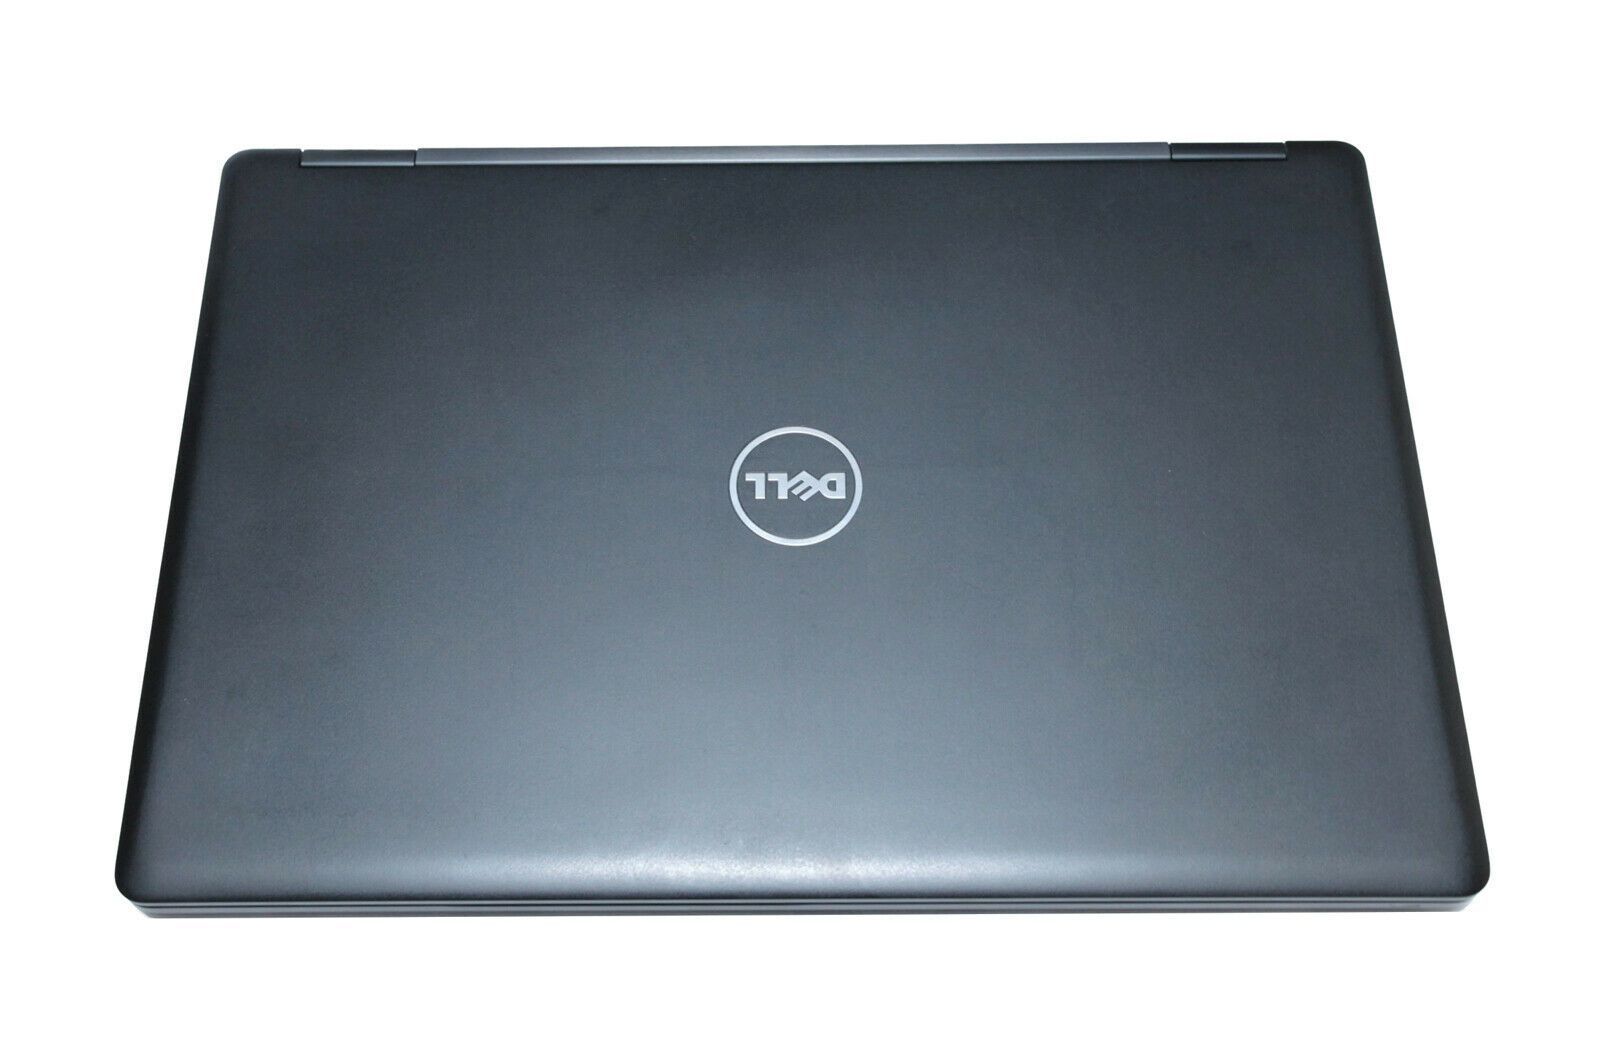 Dell Precision 3520 CAD Laptop: Core i7-7700HQ, Quadro M620, 128GB SSD, 8GB RAM - CruiseTech